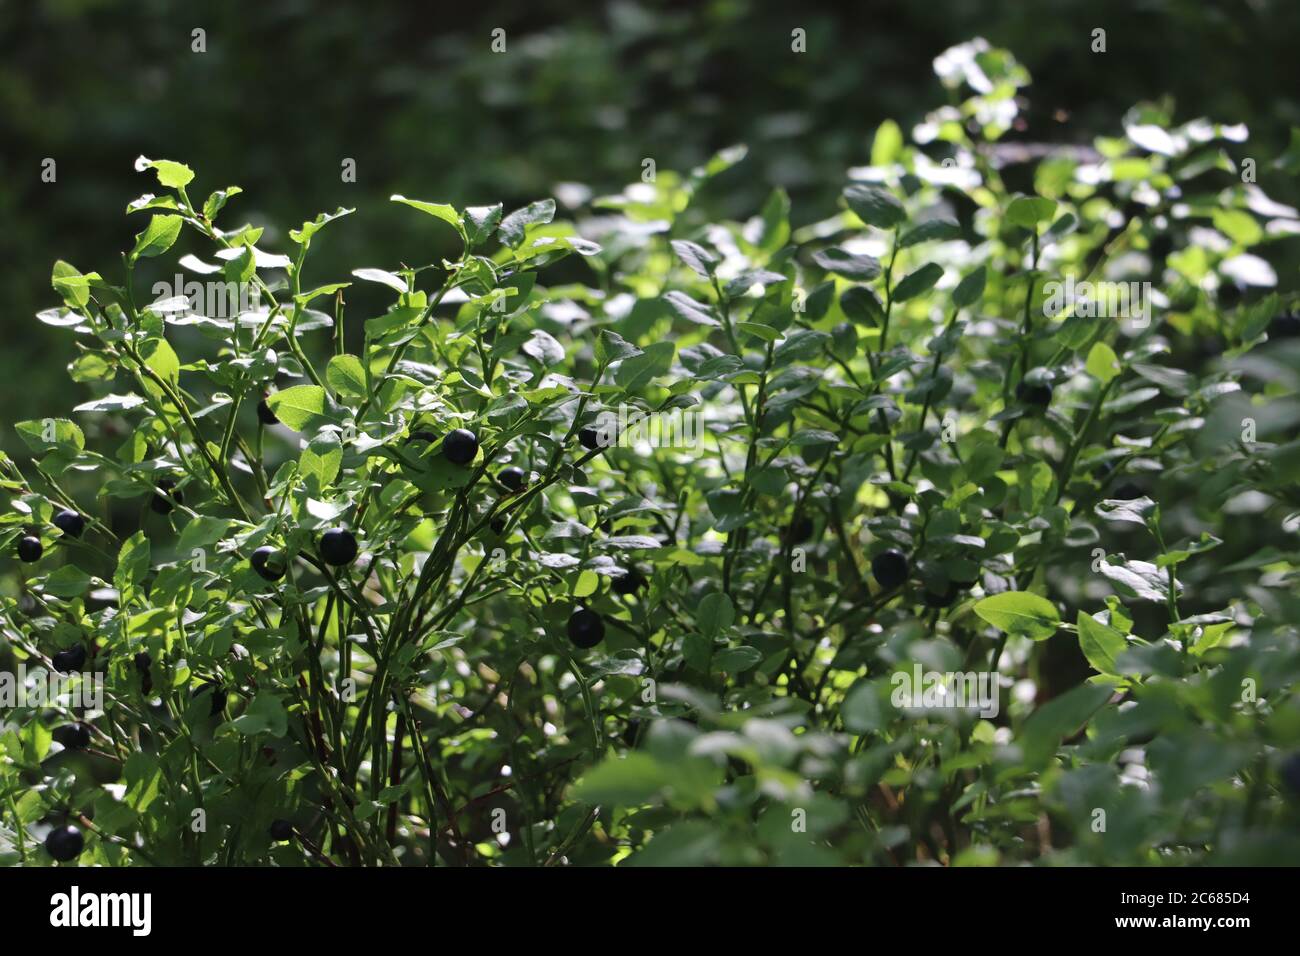 baies sauvages attachées à la plante entourée de feuillage vert Banque D'Images